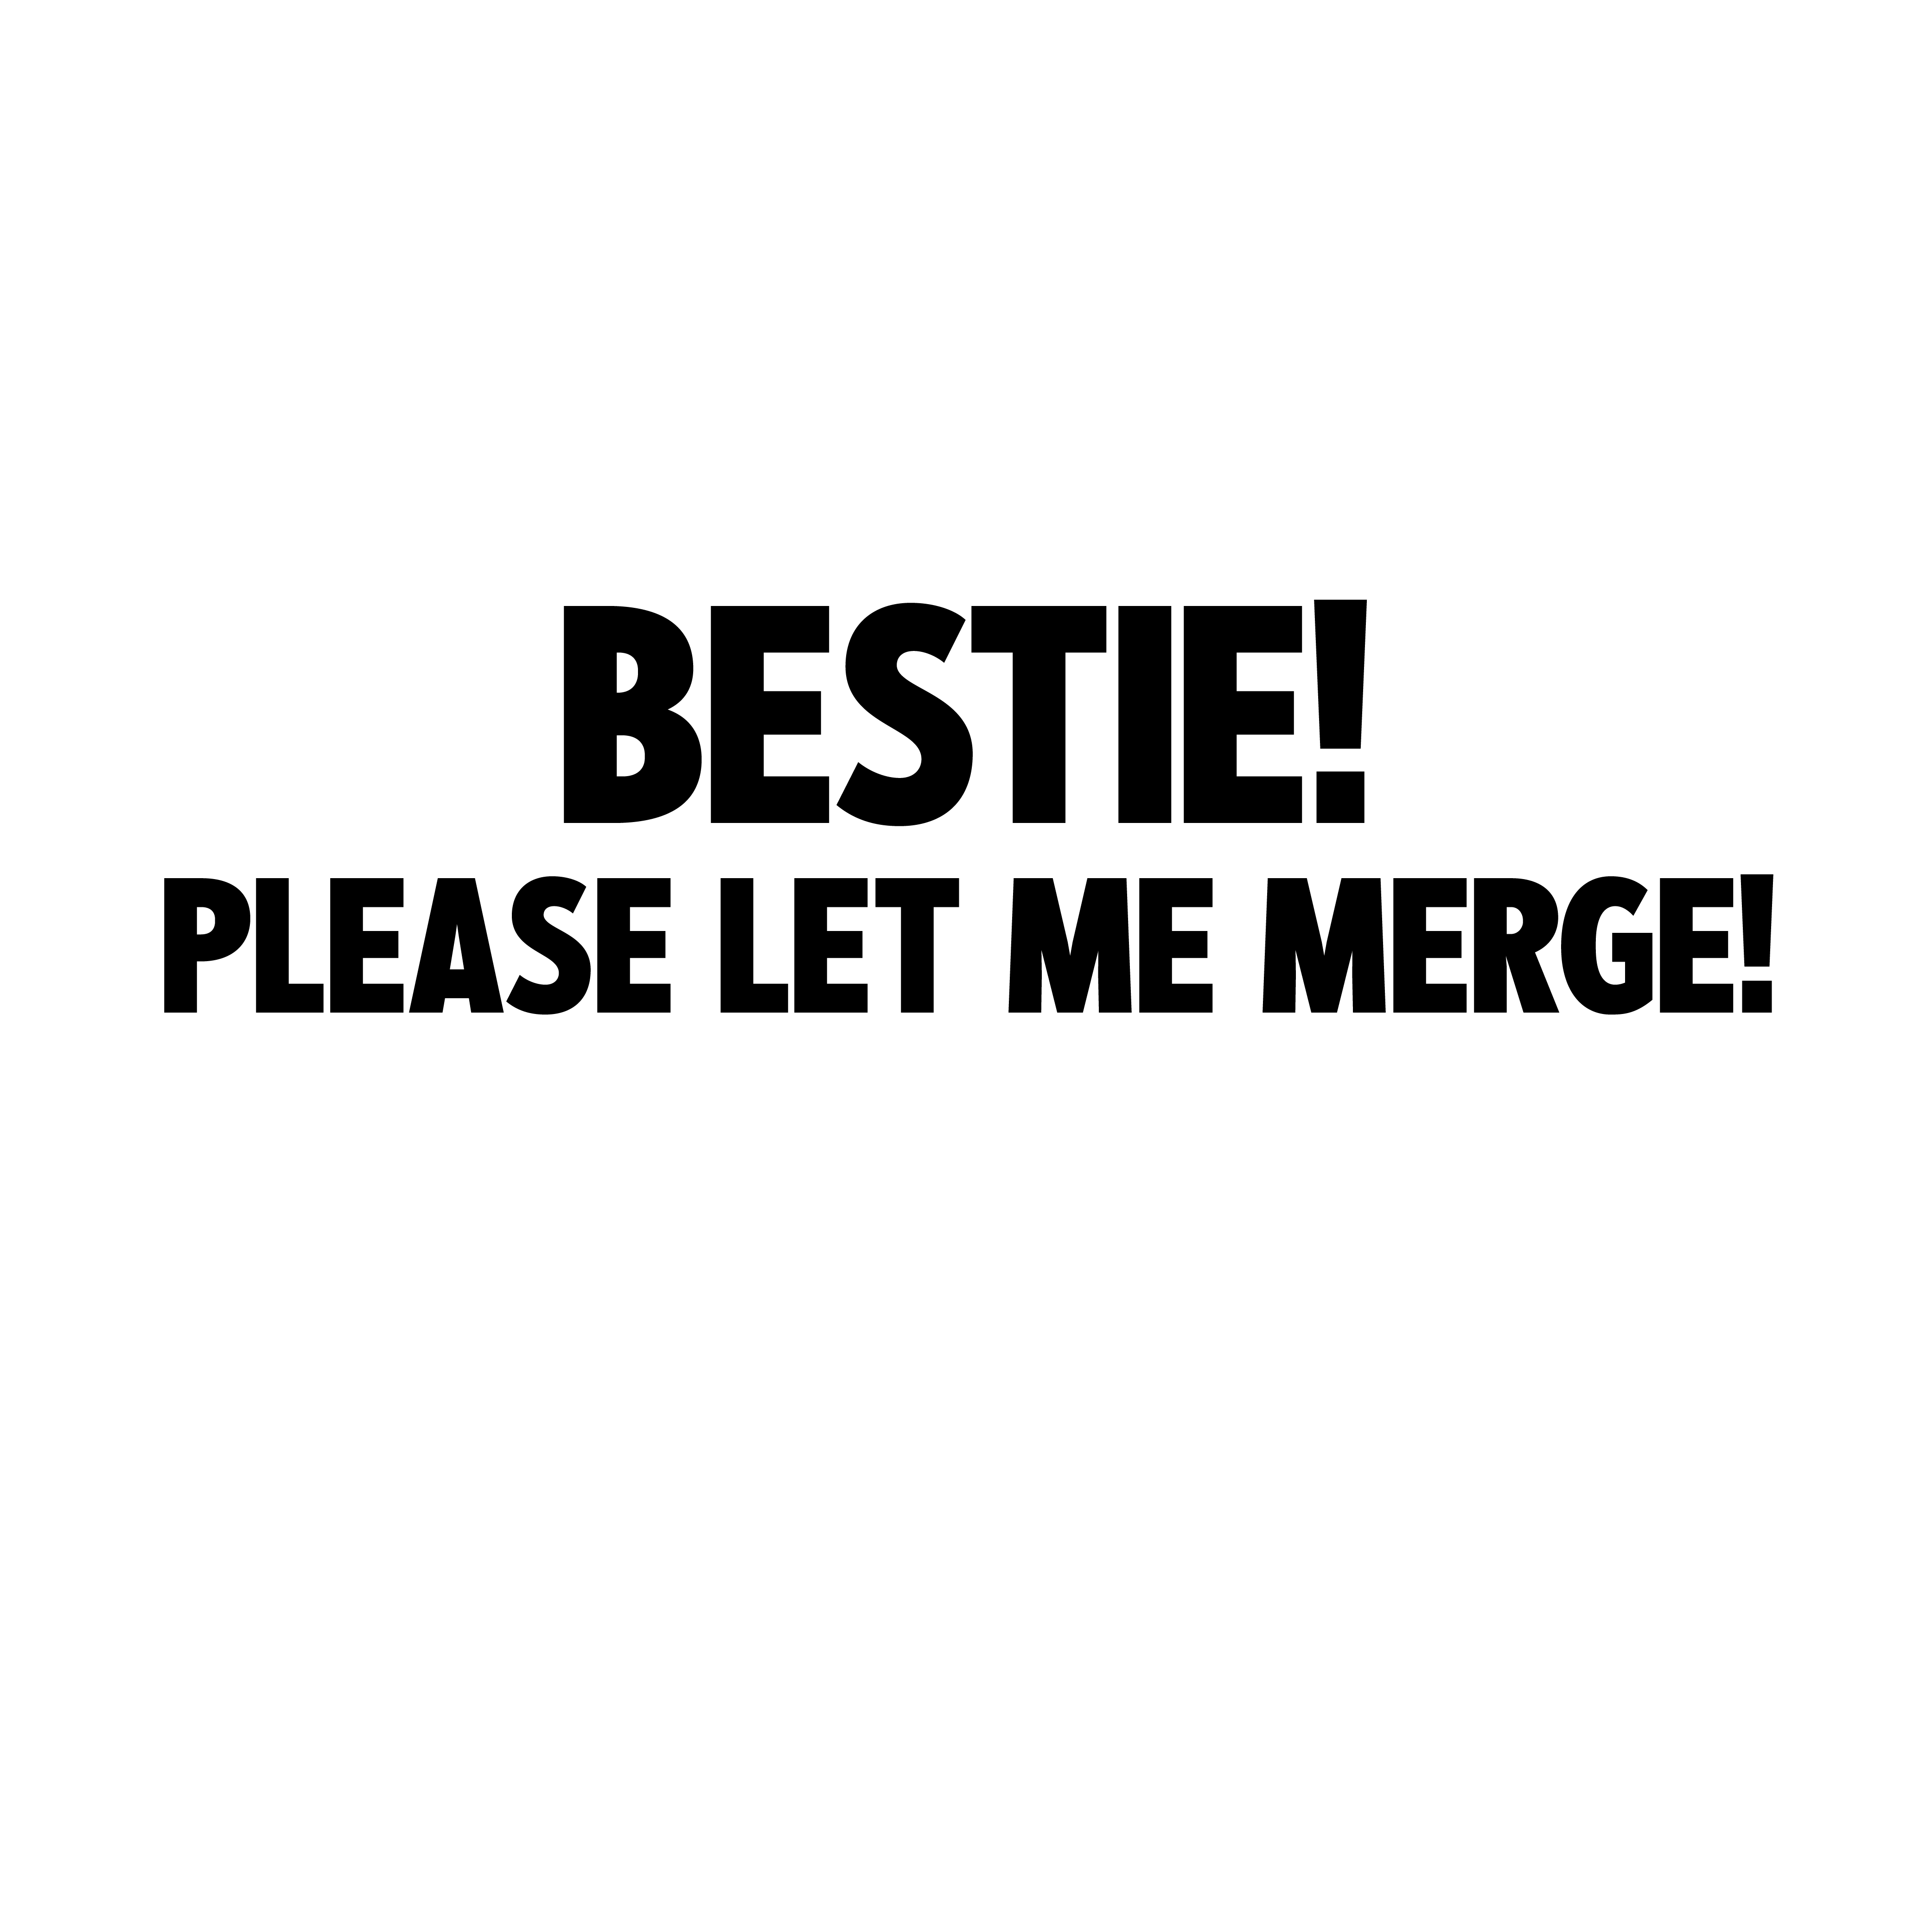 Bestie let me merge! decal